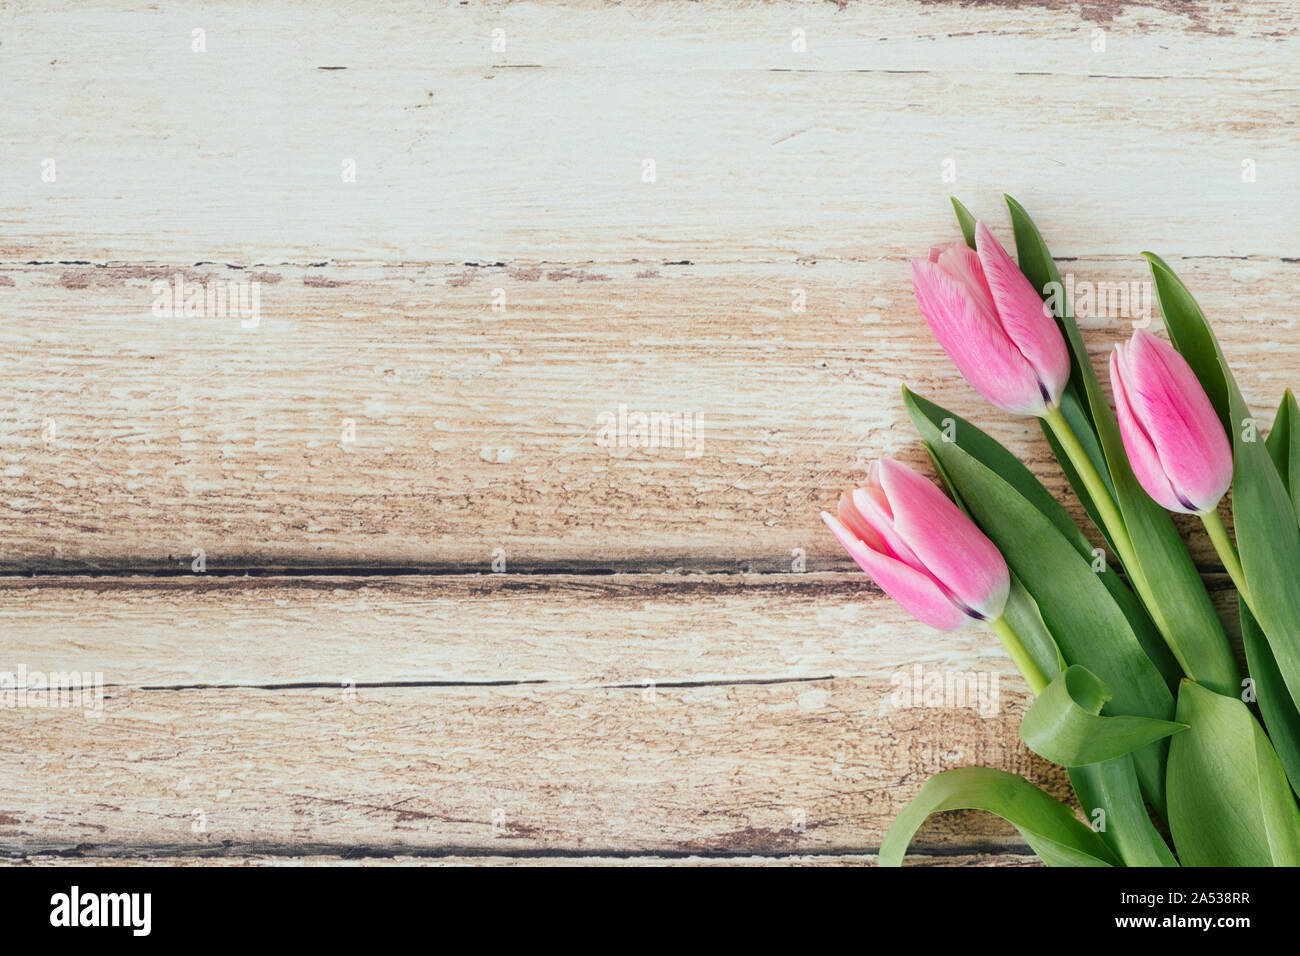 Trois magnifiques tulipes étendu sur la terre vue laïcs vu de dessus. Les fleurs roses sont sur une table en bois rustique marron clair. Le joli printemps f Banque D'Images